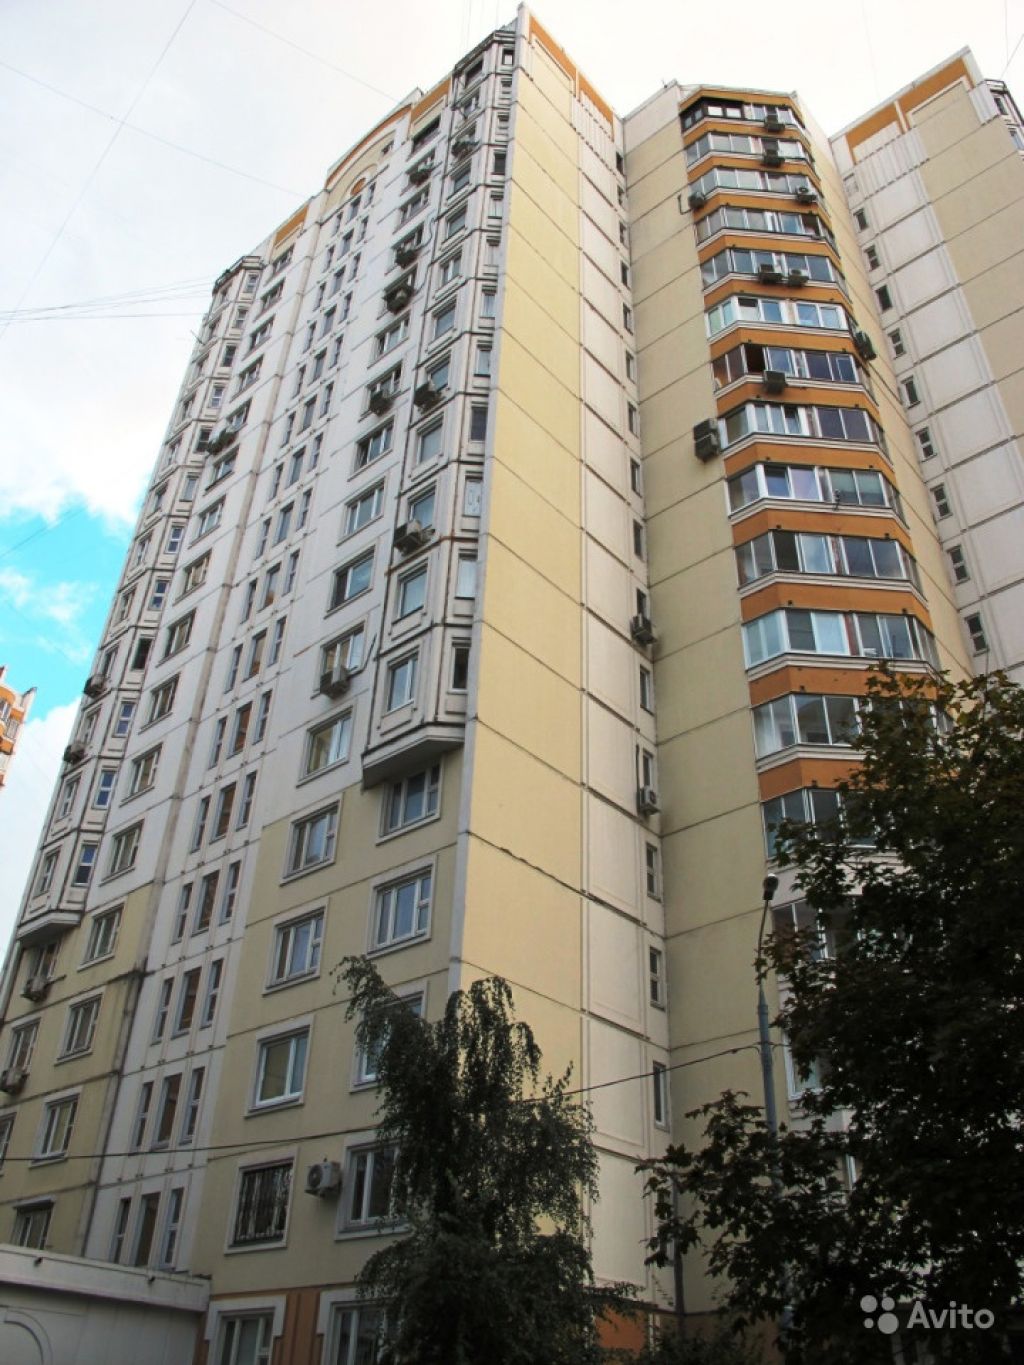 Сдам квартиру 3-к квартира 84 м² на 5 этаже 17-этажного панельного дома в Москве. Фото 1